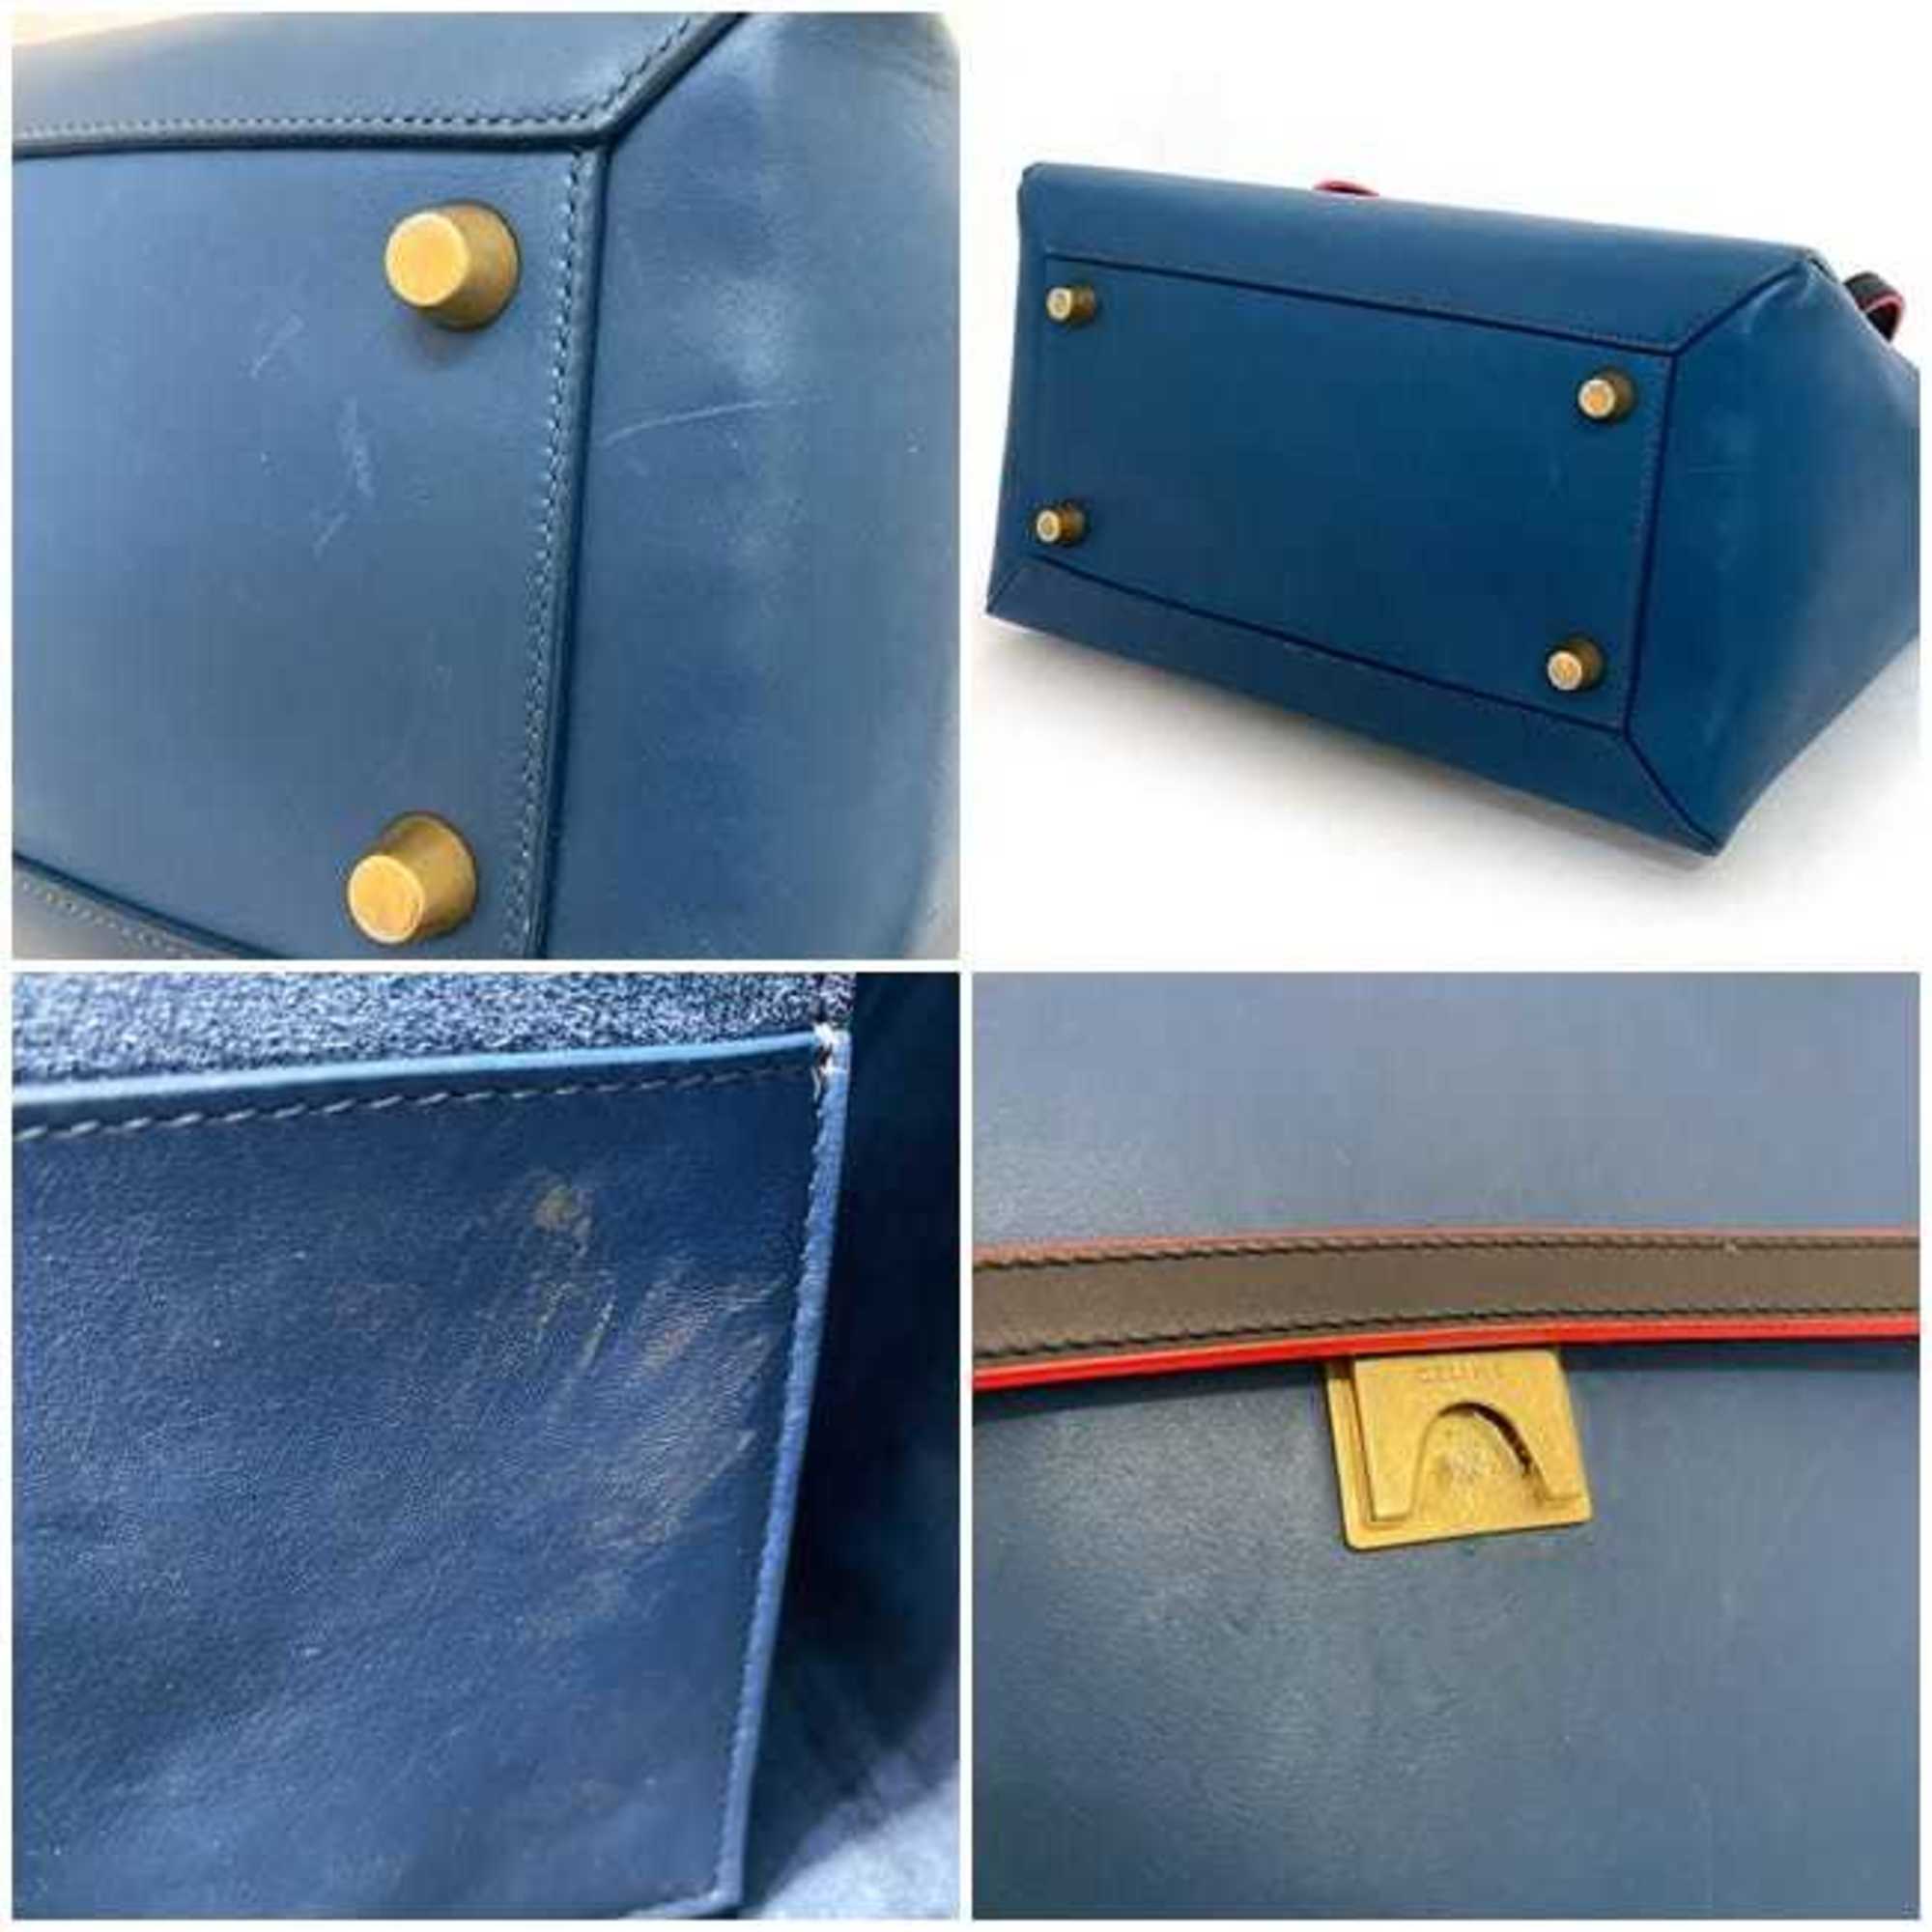 CELINE belt bag blue black red bicolor 2way leather handbag flap shoulder ladies